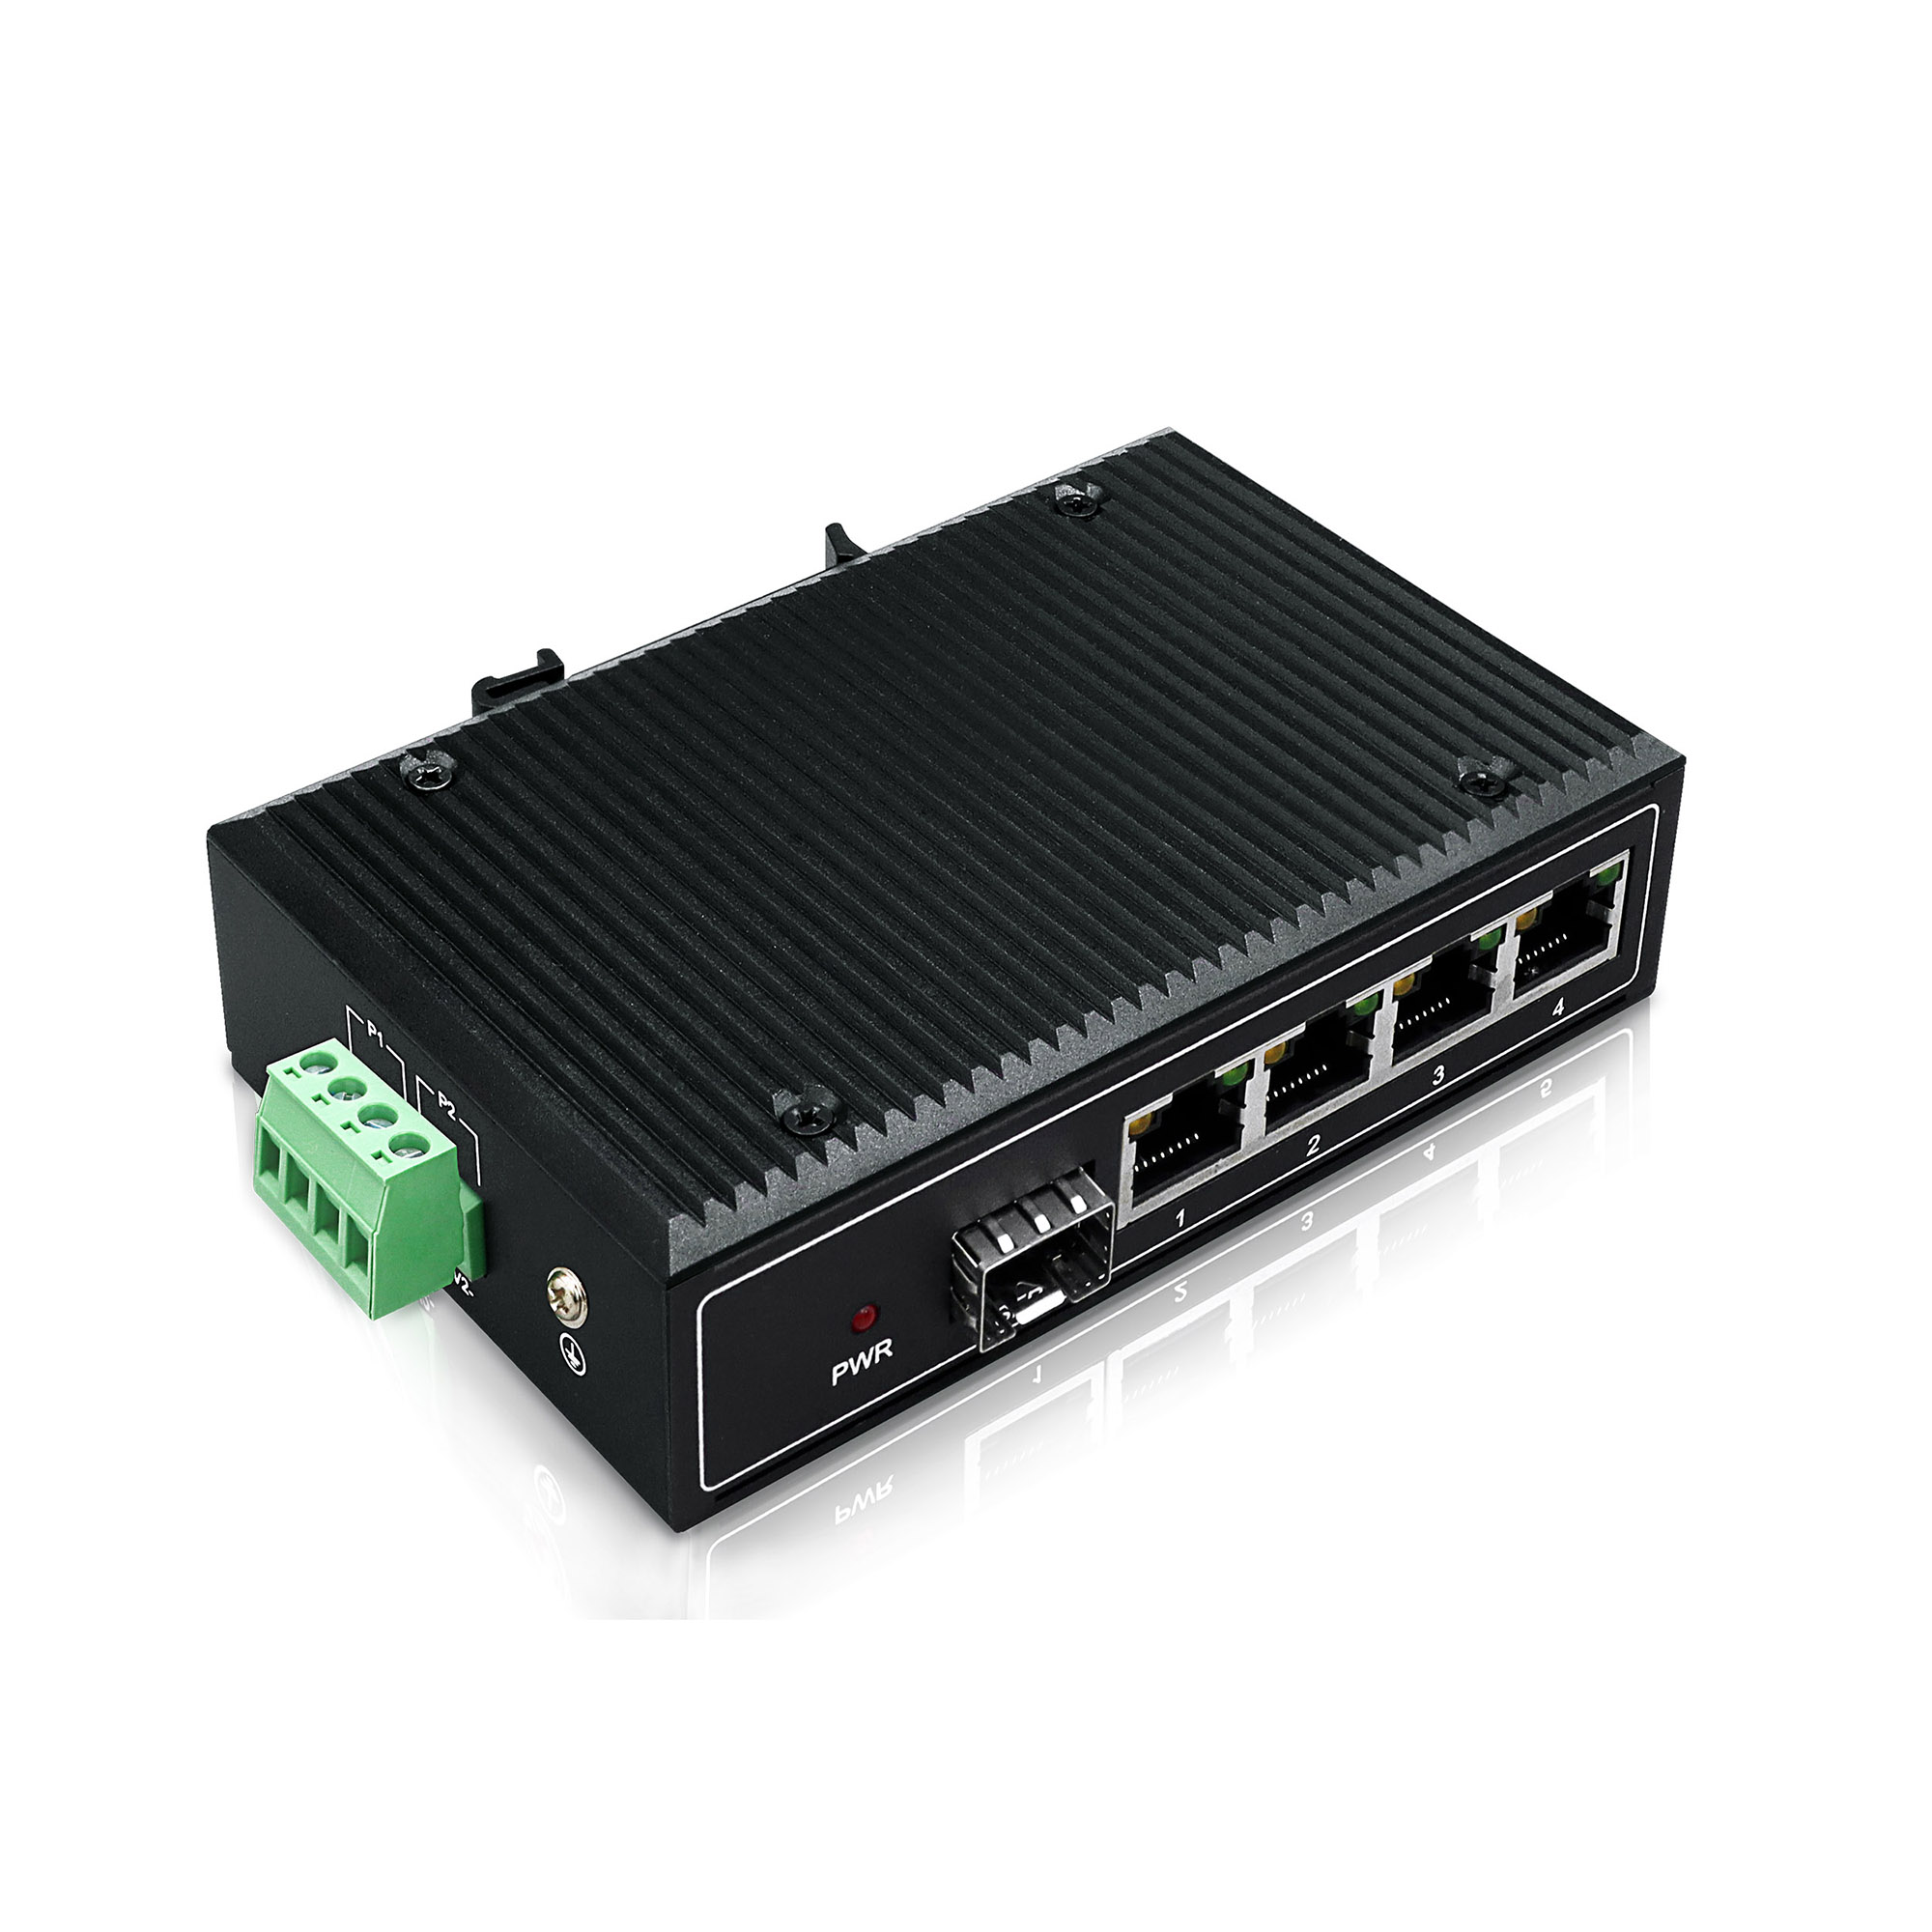 YN-SF105S Industrial Ethernet Switch